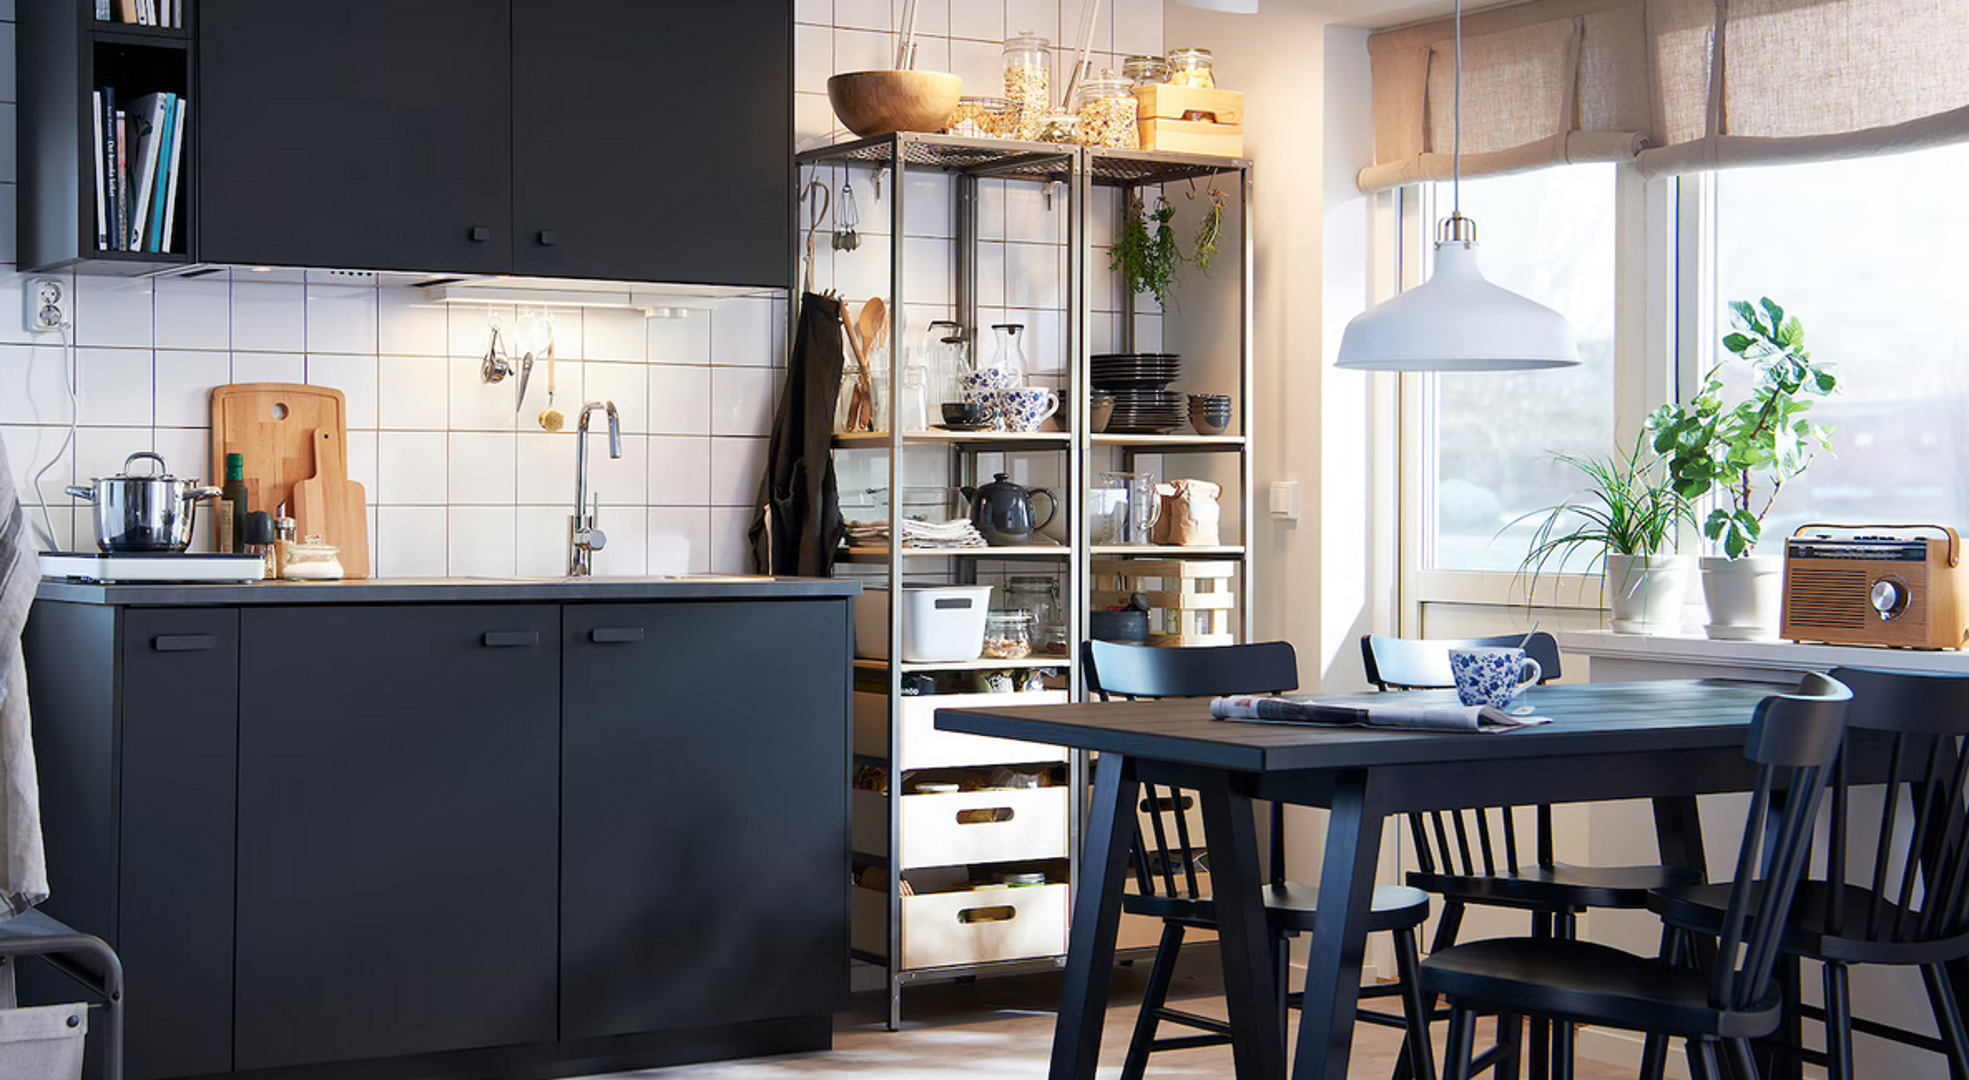 Ova moderna mala kuhinja ima kuhinjske fronte boje tamnog antracita. Izrađene su od recikliranog drva prekrivenog plastičnim filmom dobivenim od recikliranih PET boca